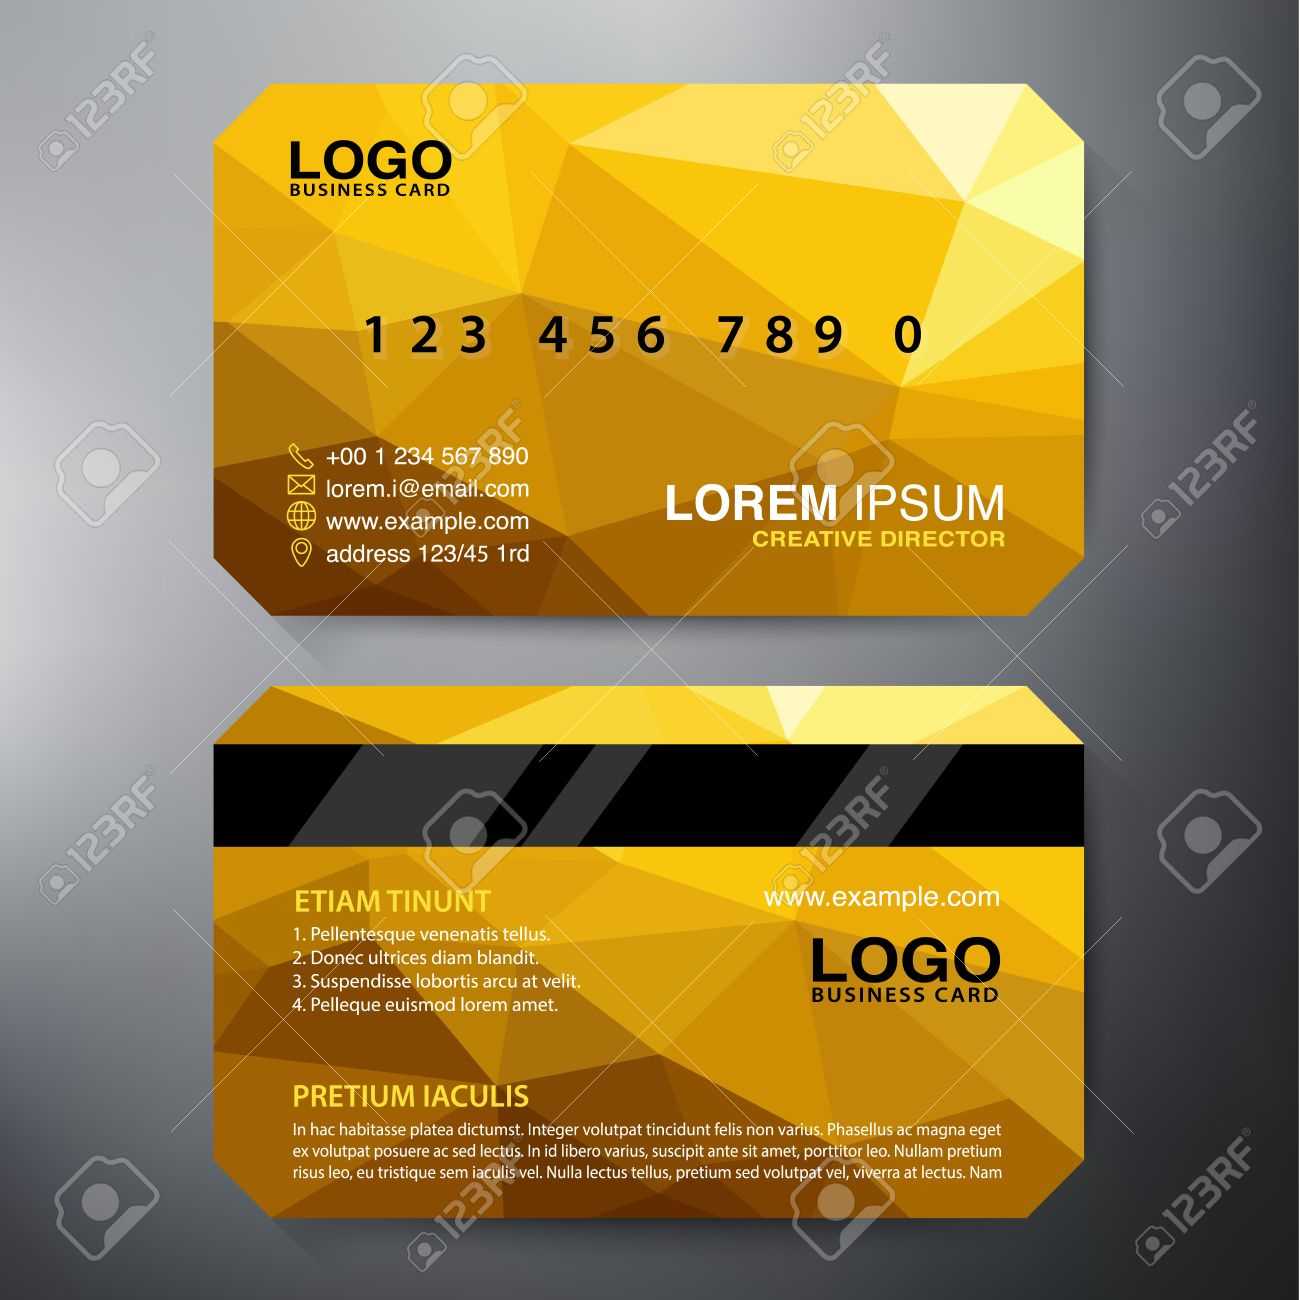 Modern Business Card Design Template. Vector Illustration With Modern Business Card Design Templates